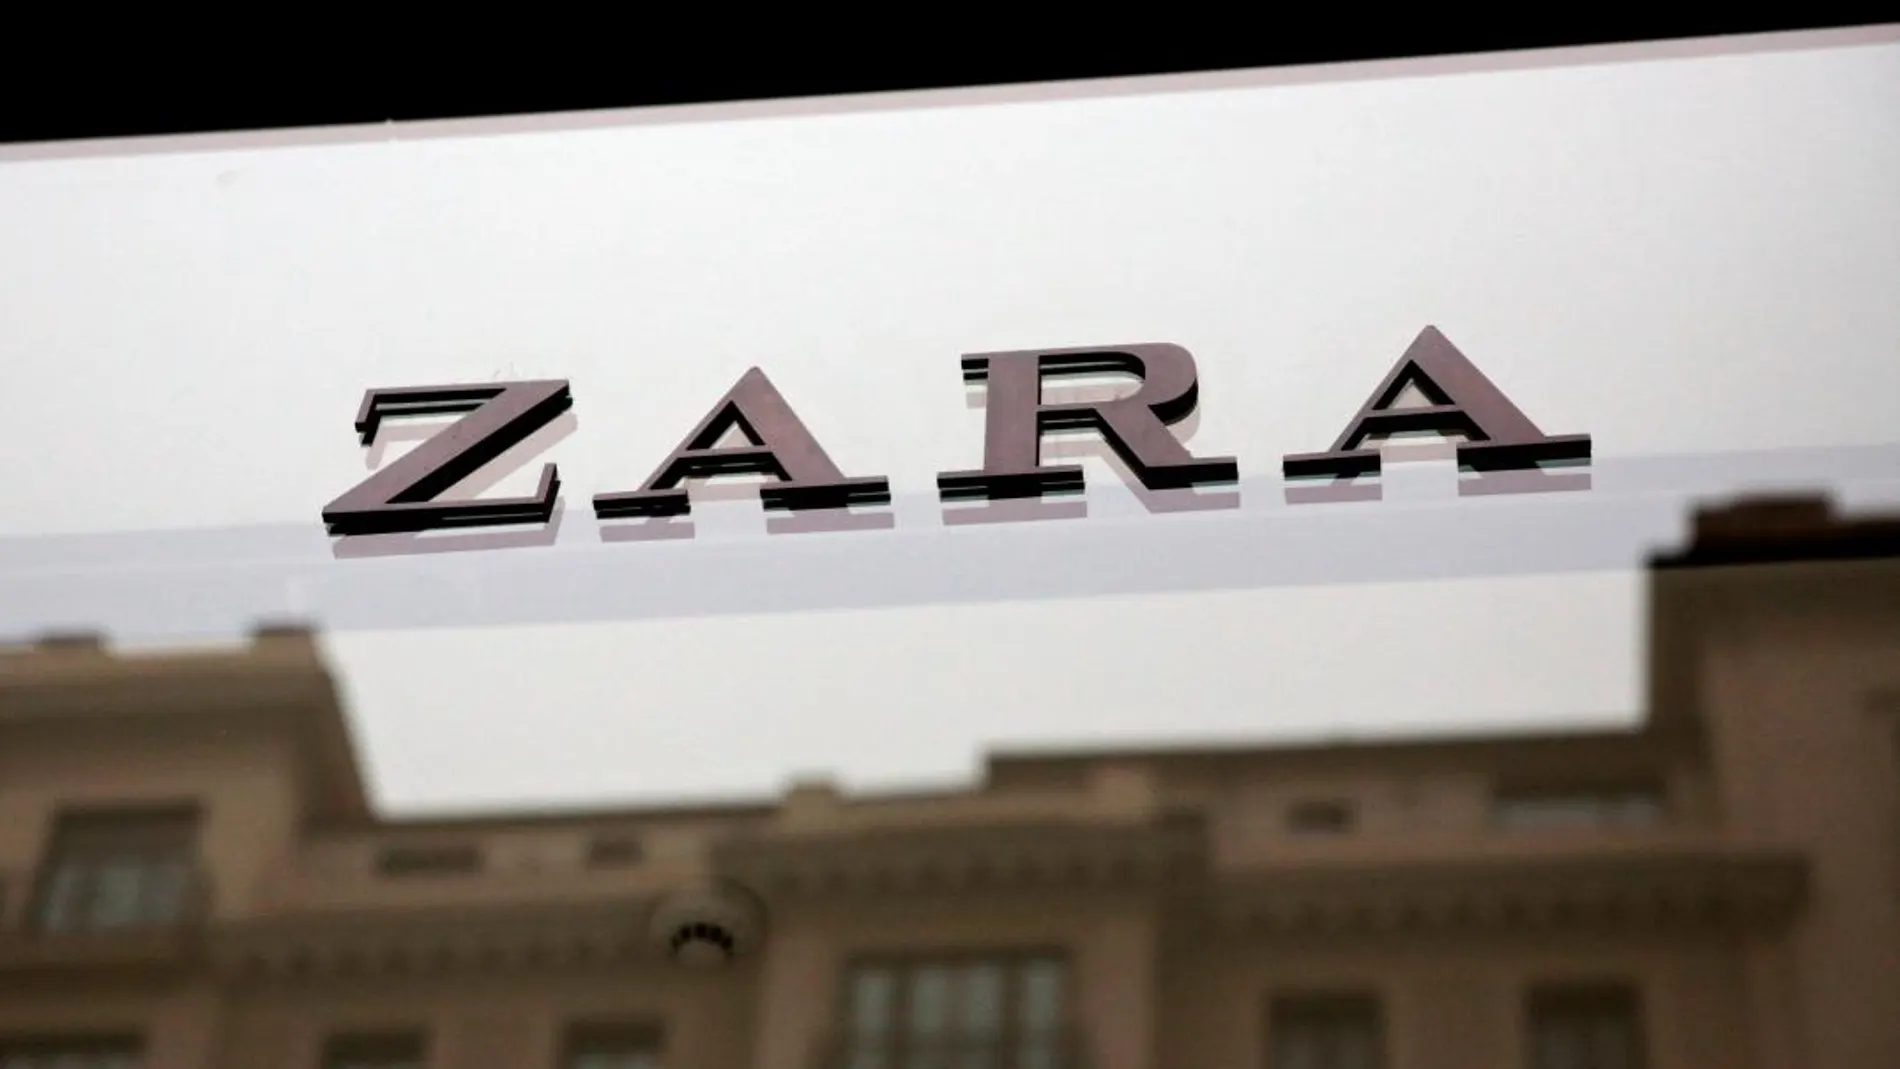 Tienda de Zara en el centro de Madrid. Foto: Reuters